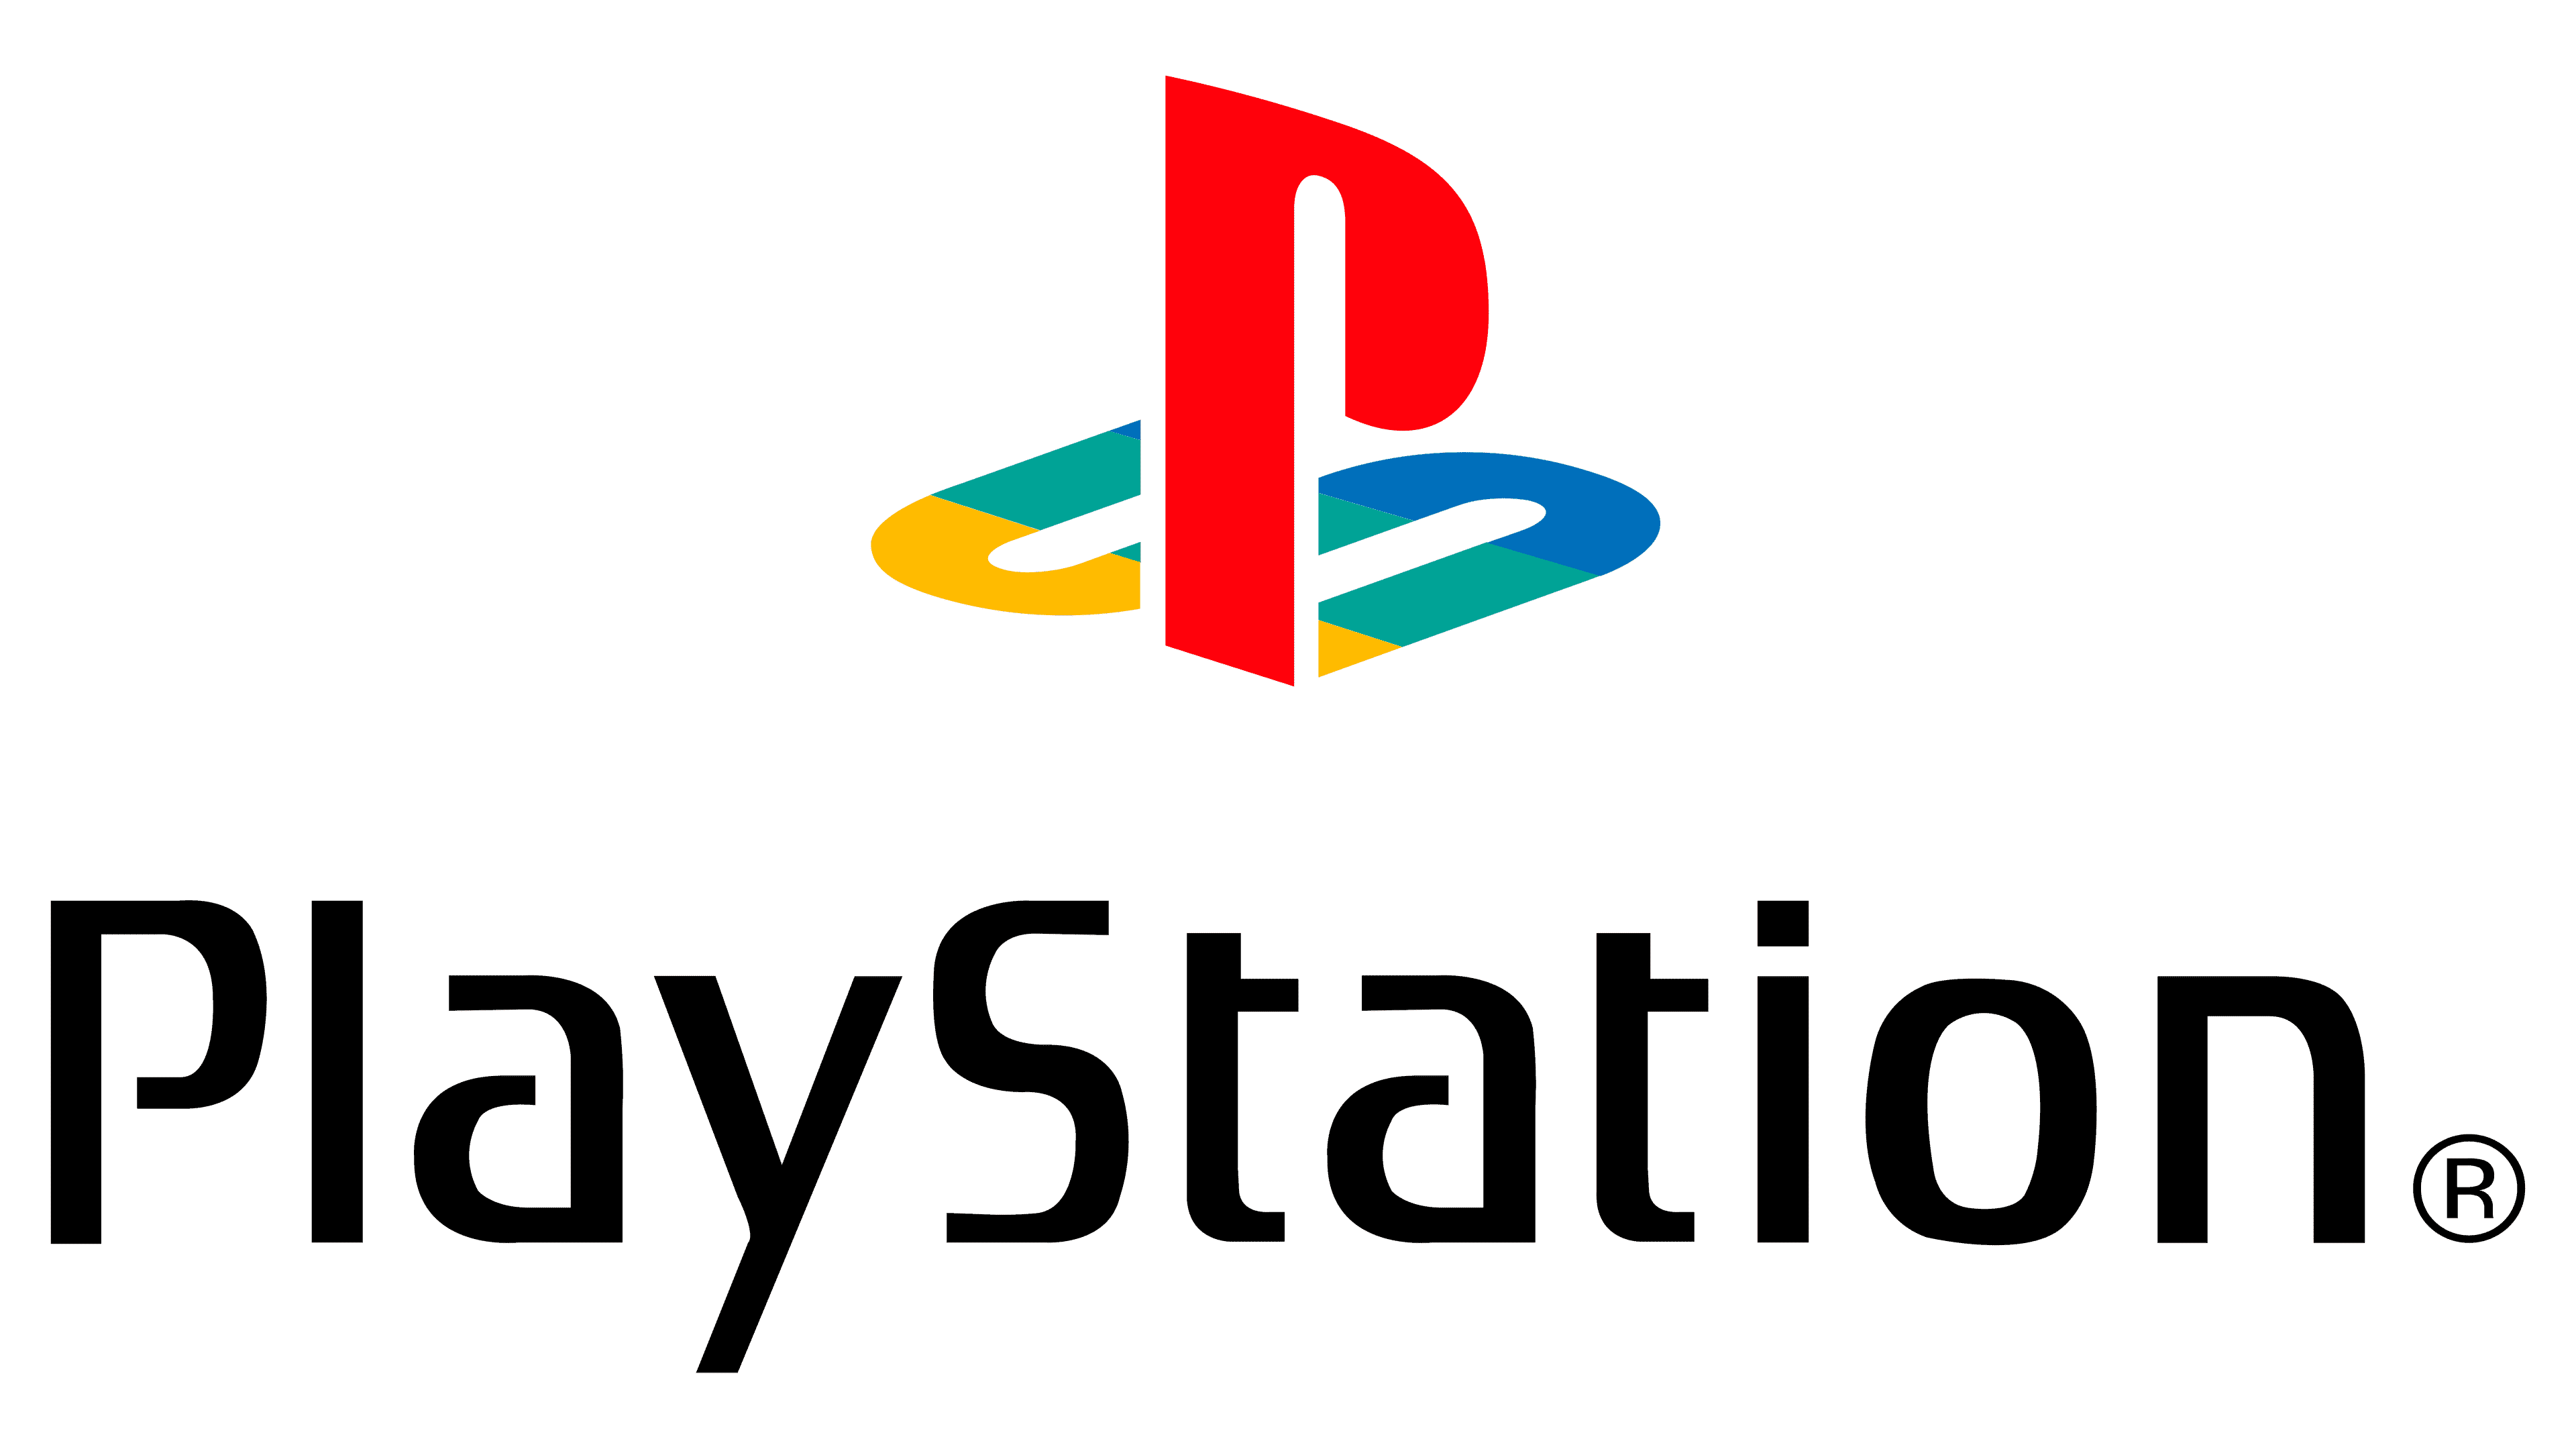 Логотип пс. Sony ps1 logo. Консоль Sony PLAYSTATION лого. Sony PLAYSTATION логотип вектор. Логотип PLAYSTATION 1.